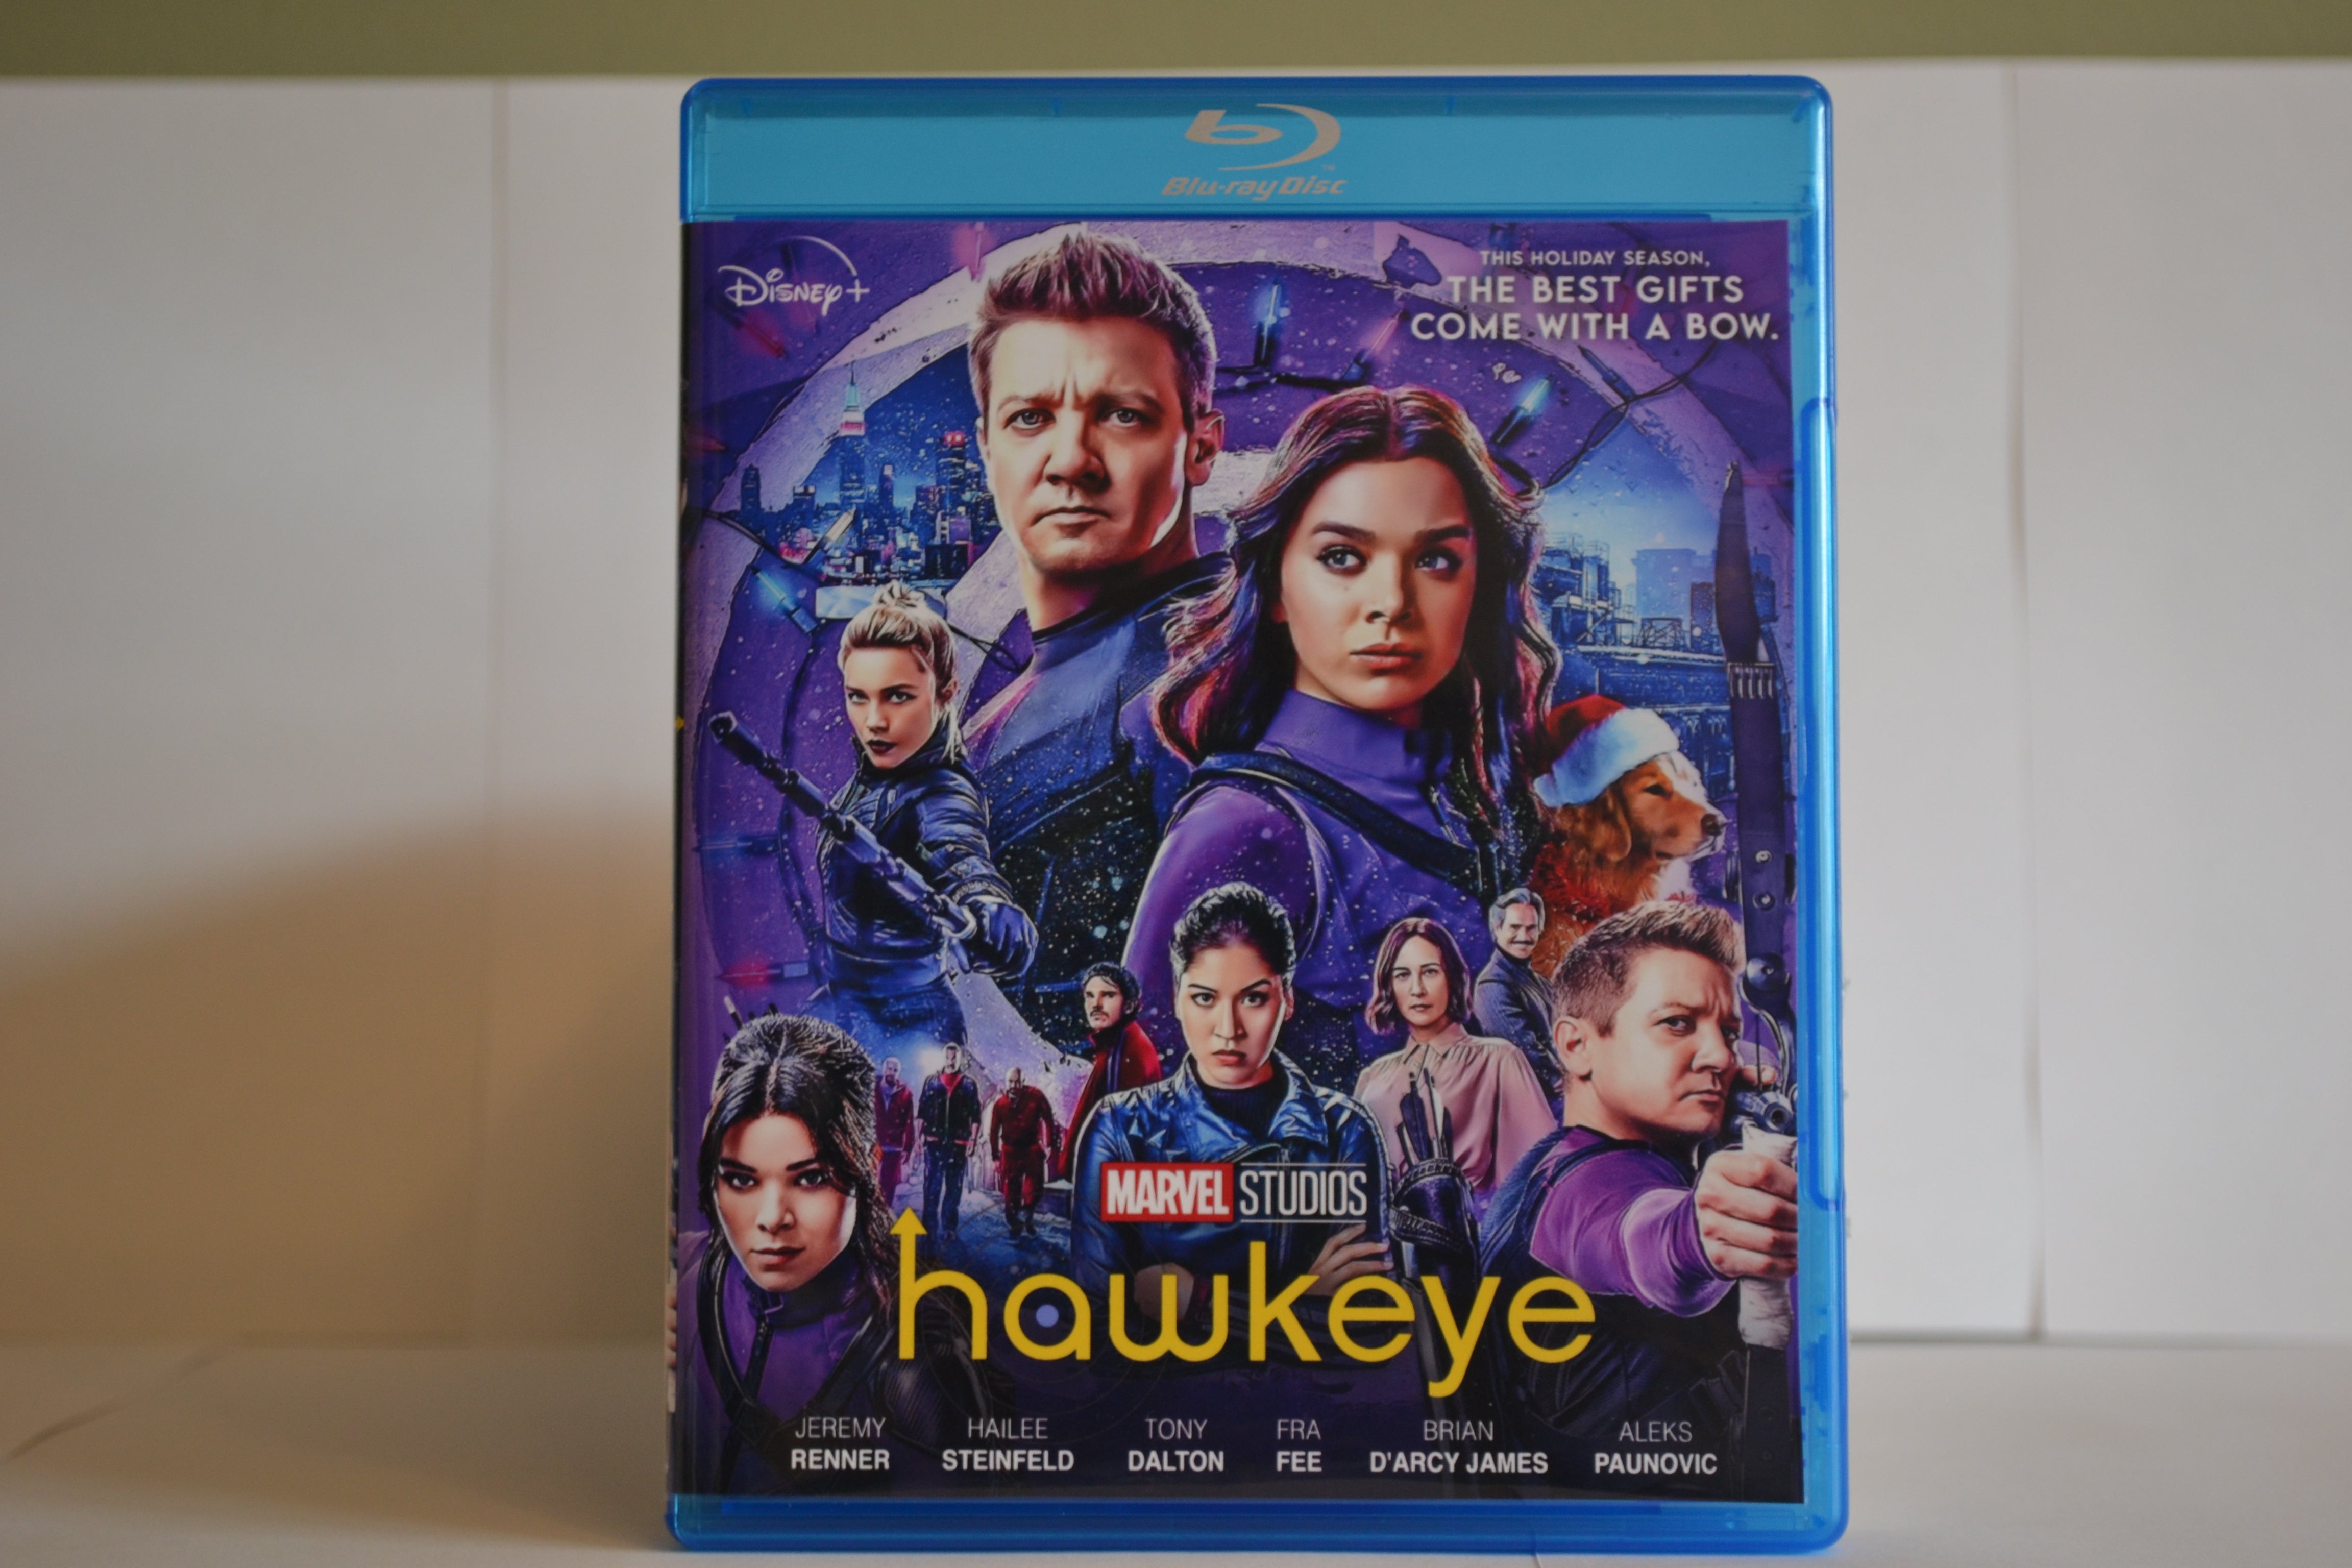 Hawkeye Season 1 Blu-ray Set